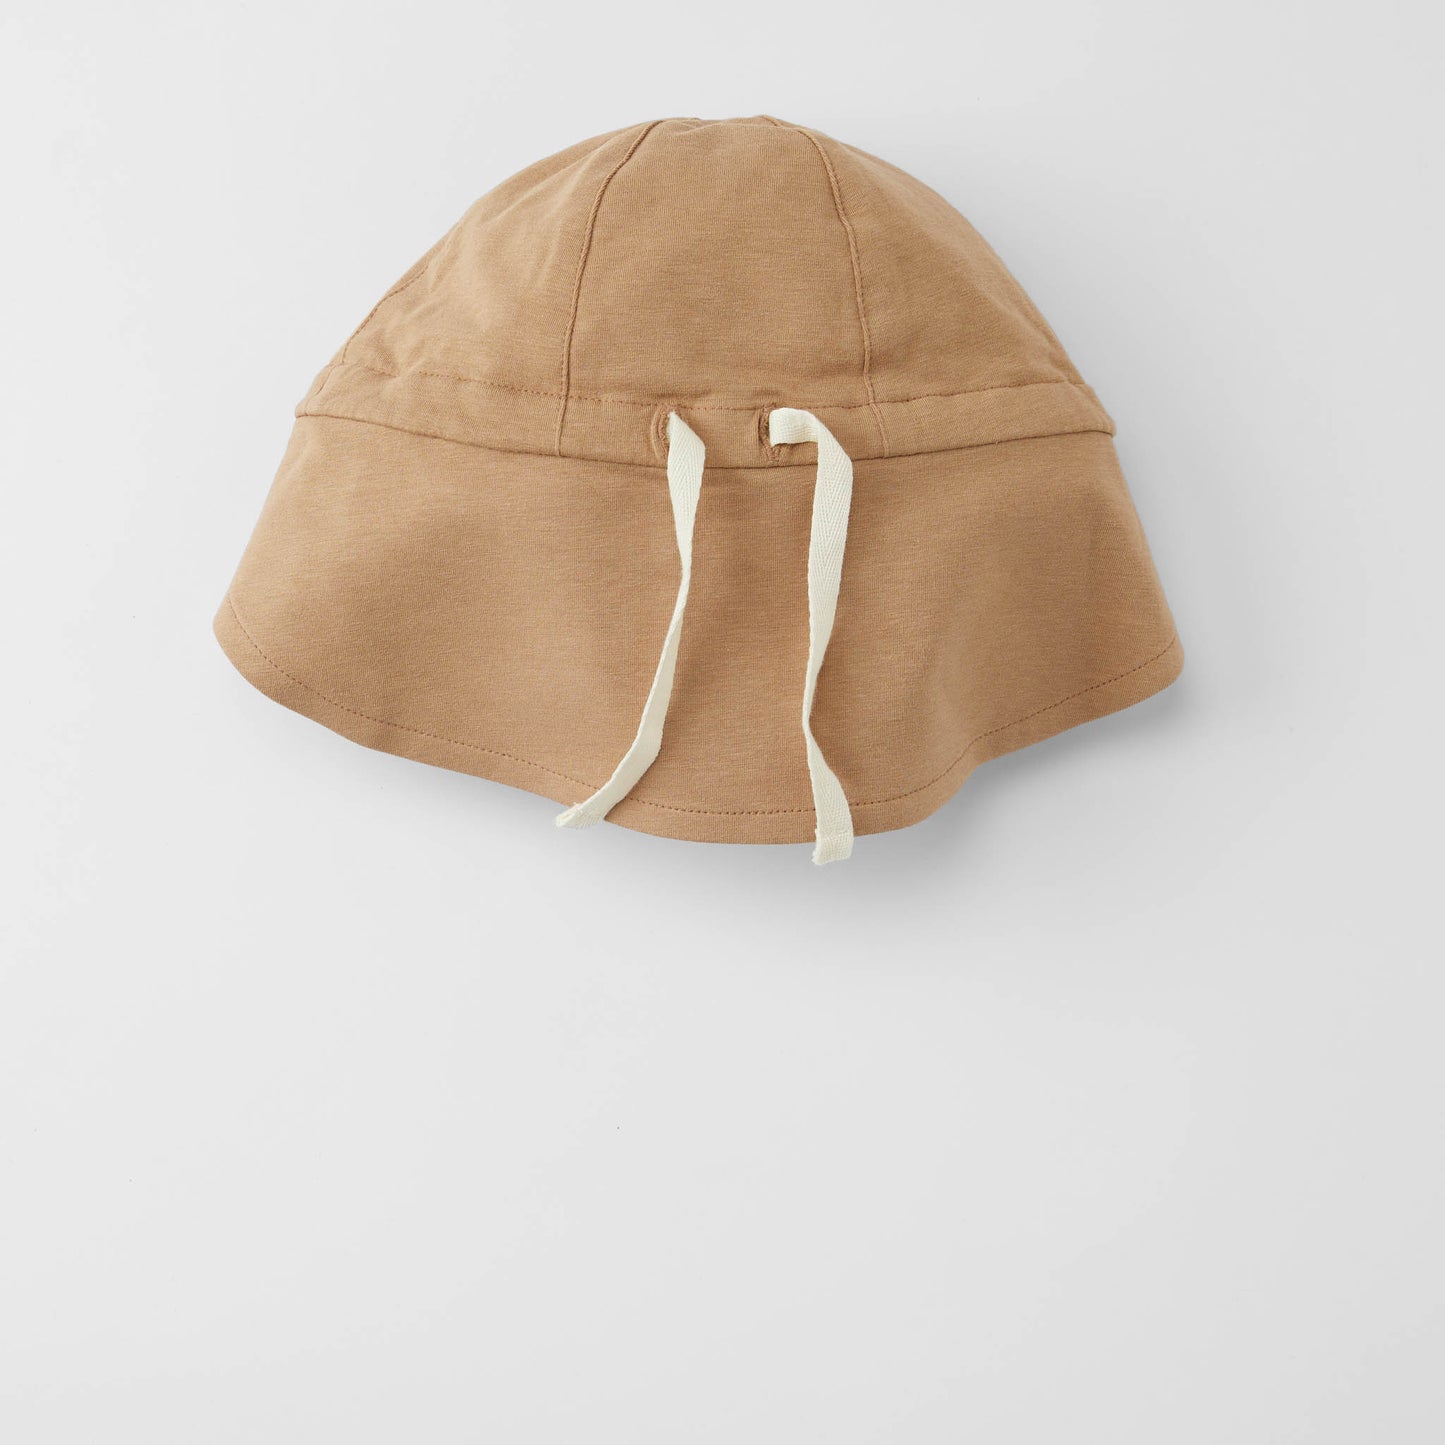 Cloby - Wendbarer Sonnenhut mit UV-Schutz "Sun Hat" |  peanut brown / sandy beach